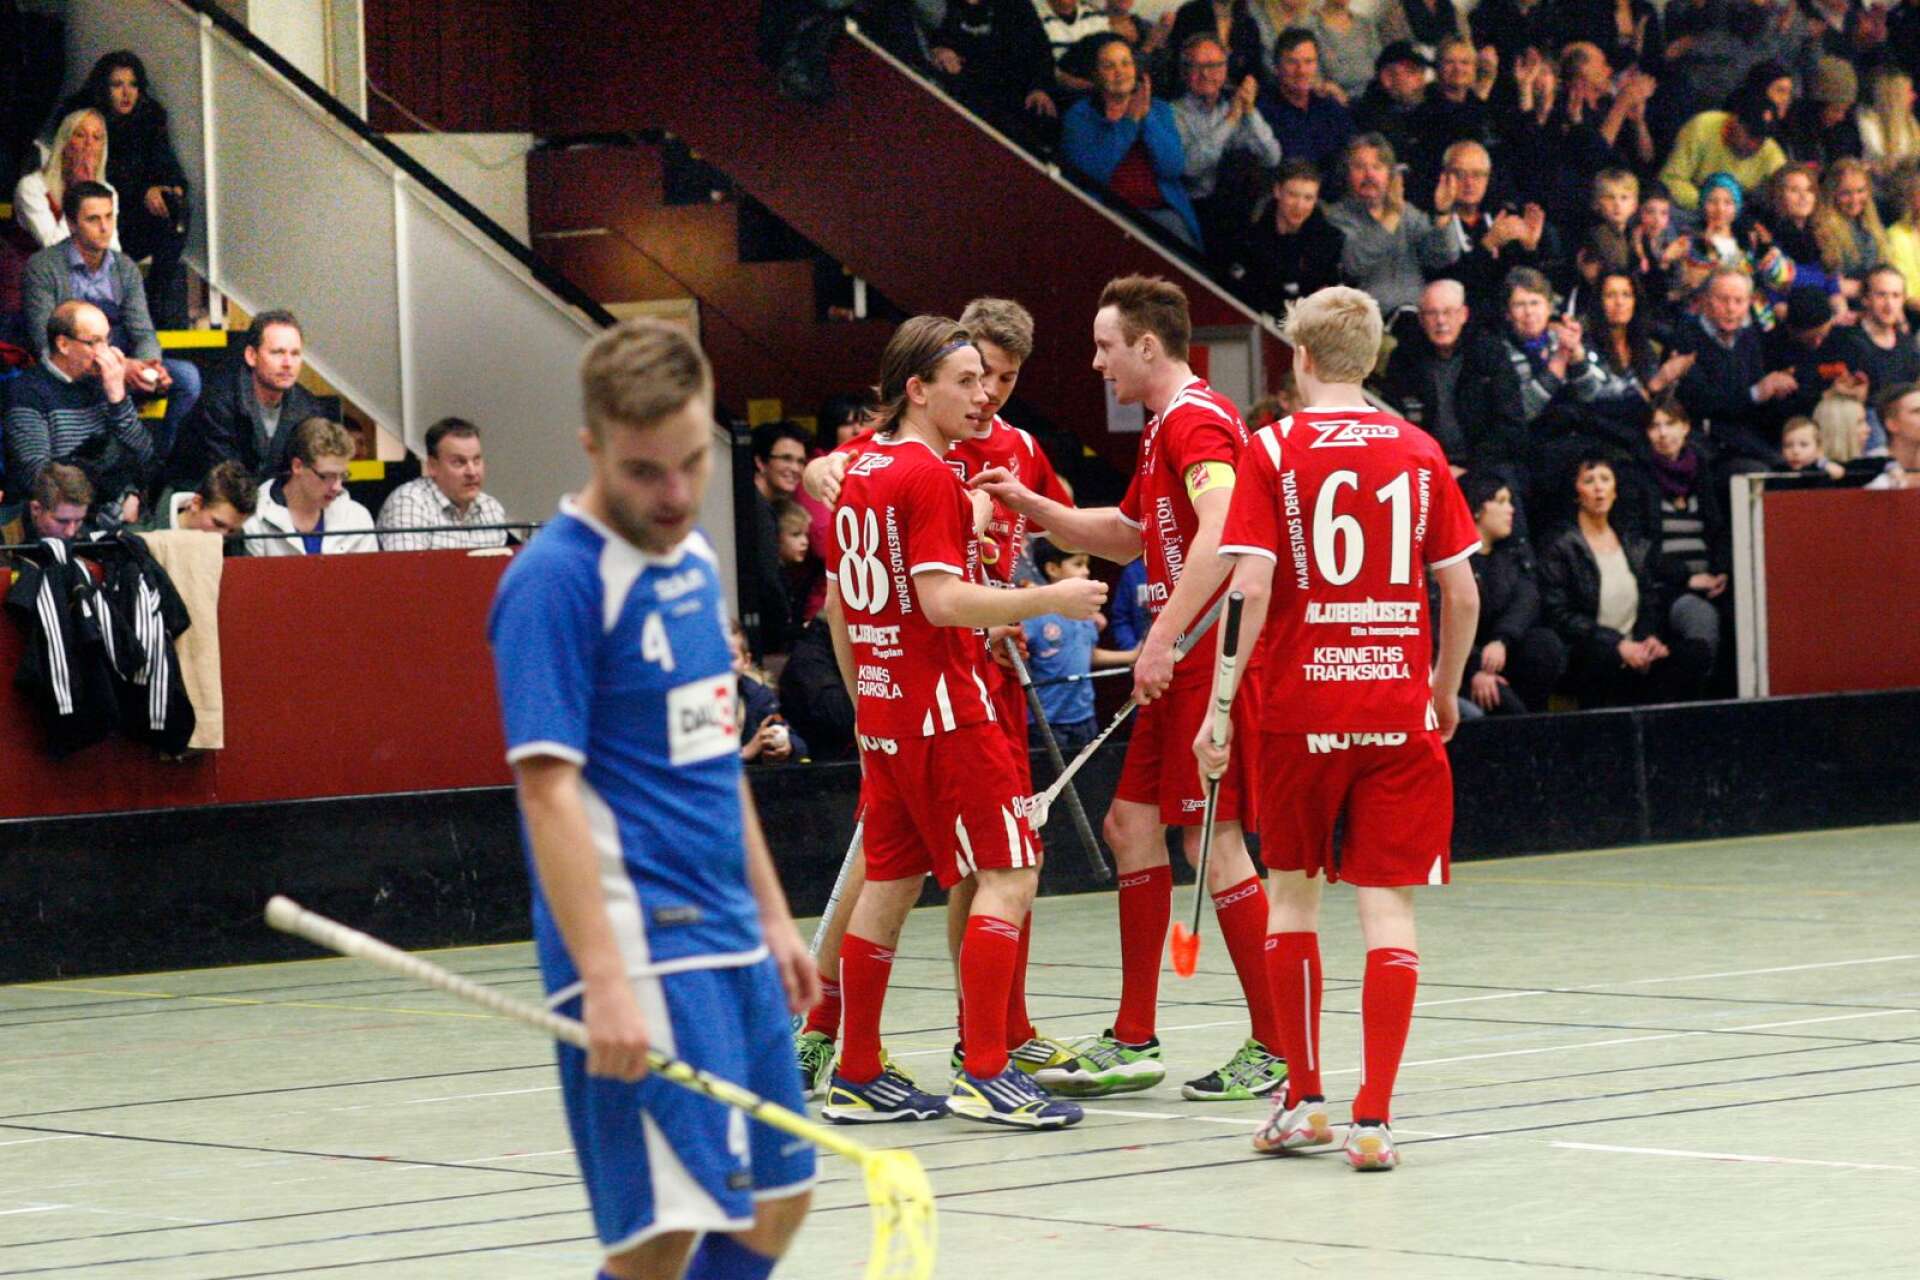 Den 11 januari 2013 vann Lockerud med 8–6 mot Halna i en fullsmockad idrottshall i Töreboda. Mariestadslagets Jerker Frick, som numera har gjort comeback, blev stor matchvinnare då med sina fyra mål. Under onsdagen drabbar lagen samman igen. (ARKIVBILD)